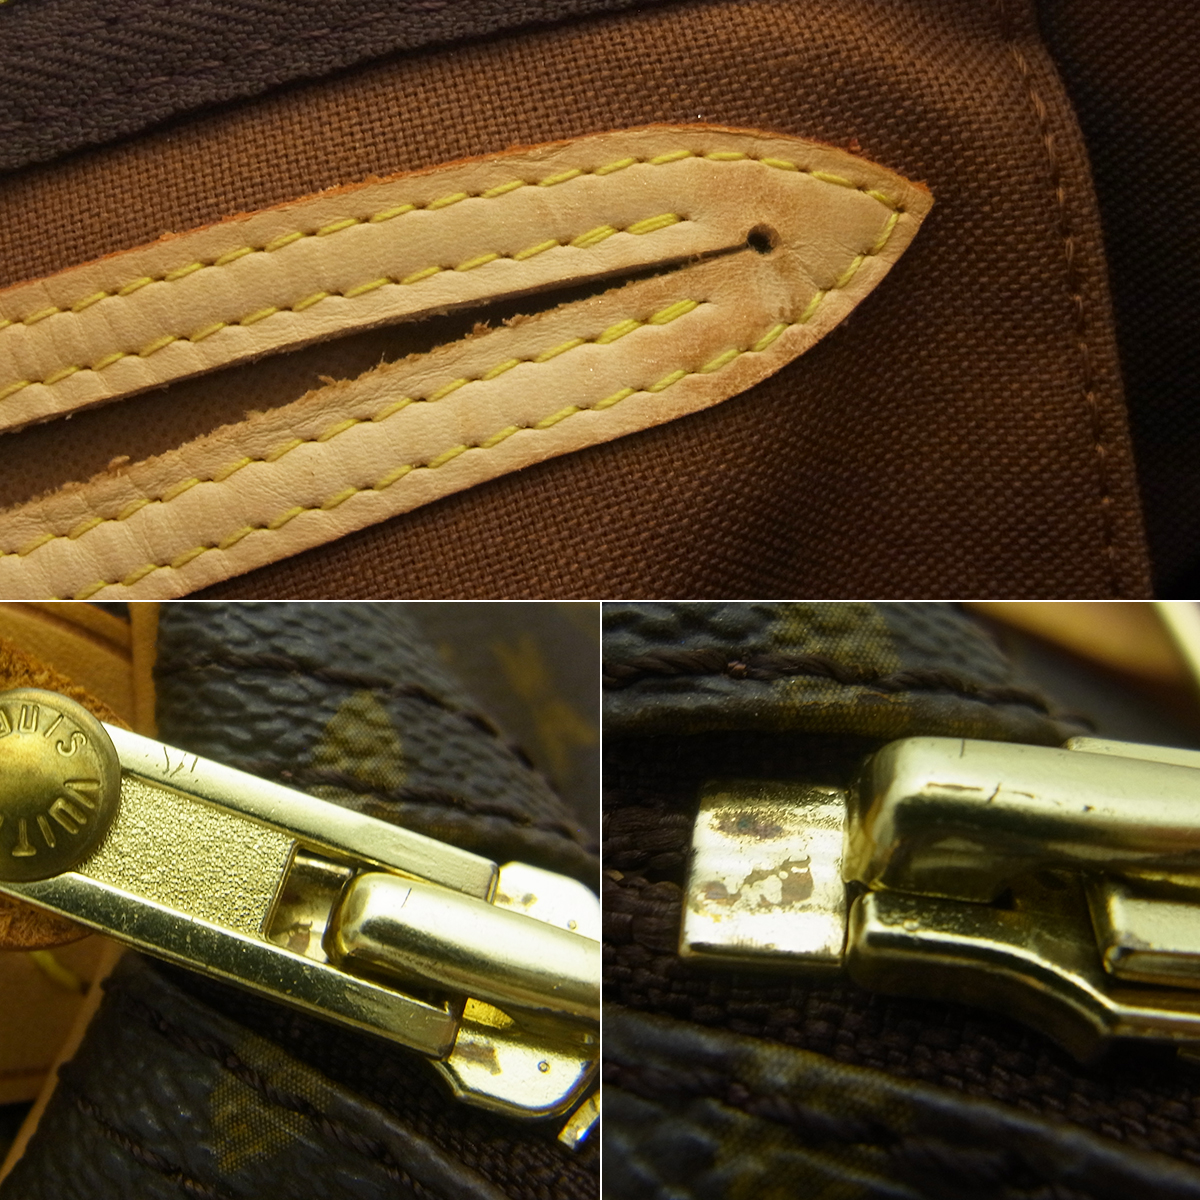 ルイヴィトン(Louis Vuitton) スピーディ30 M41526 ボストンバッグ 鍵